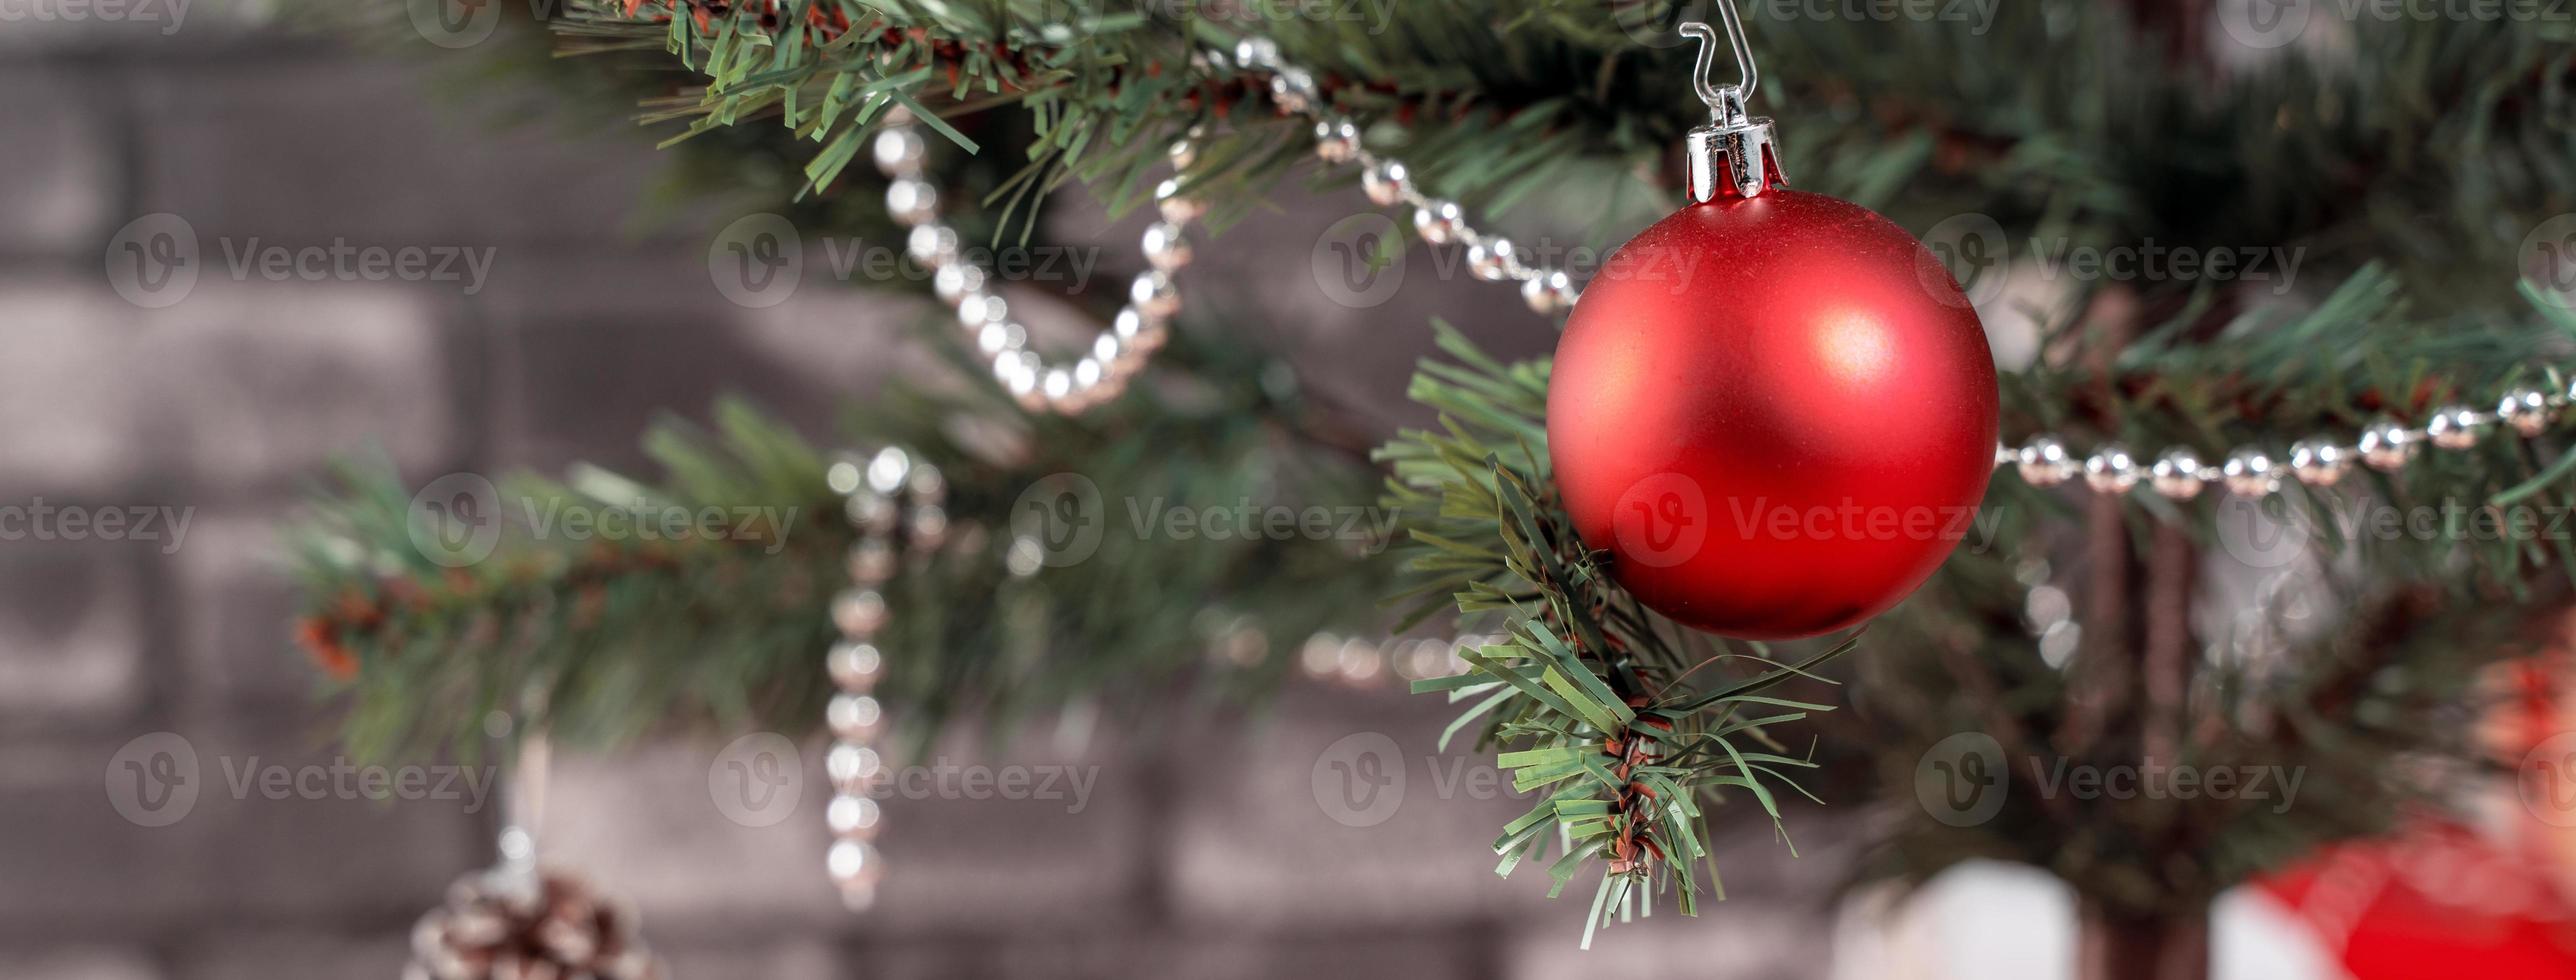 dekorerad julgran med inslagna vackra röda och vita presenter hemma med svart tegelvägg, festligt designkoncept, närbild. foto